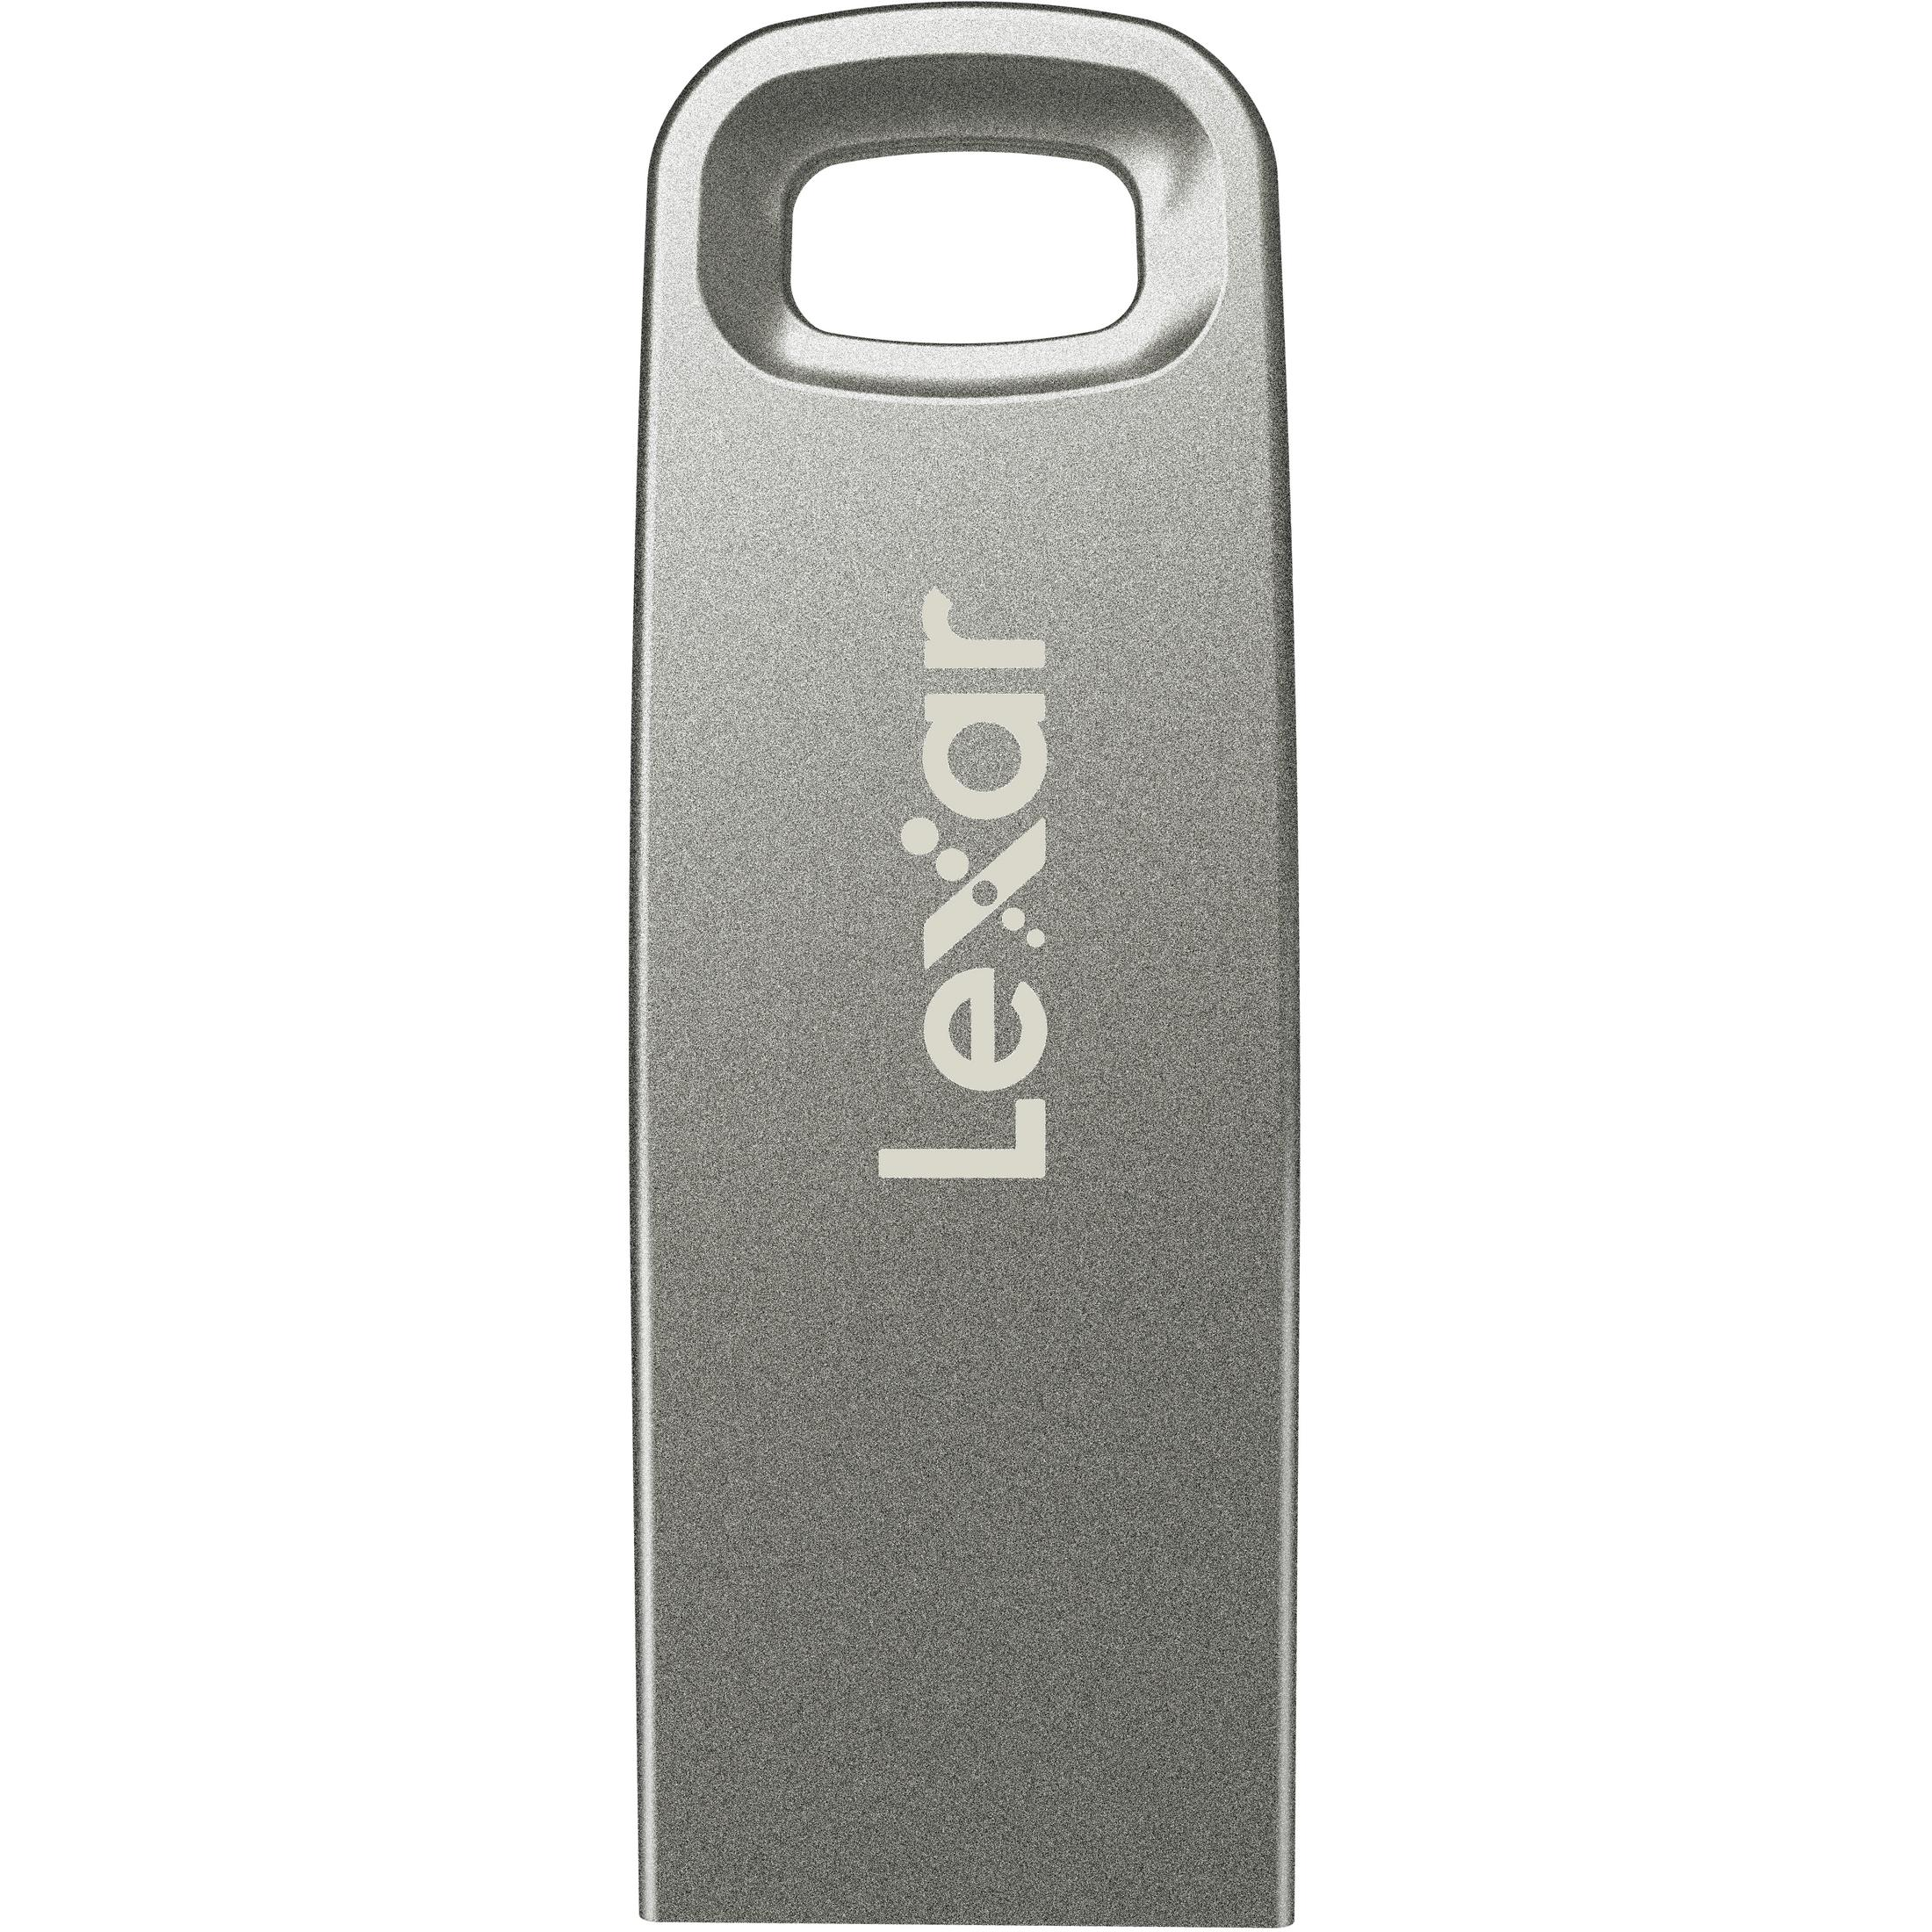 LEXAR LJDM45-256ABSL JUMPDRIV M45 256GB 256 USB-Stick USB3.1 (Silber, SILVER250 GB)